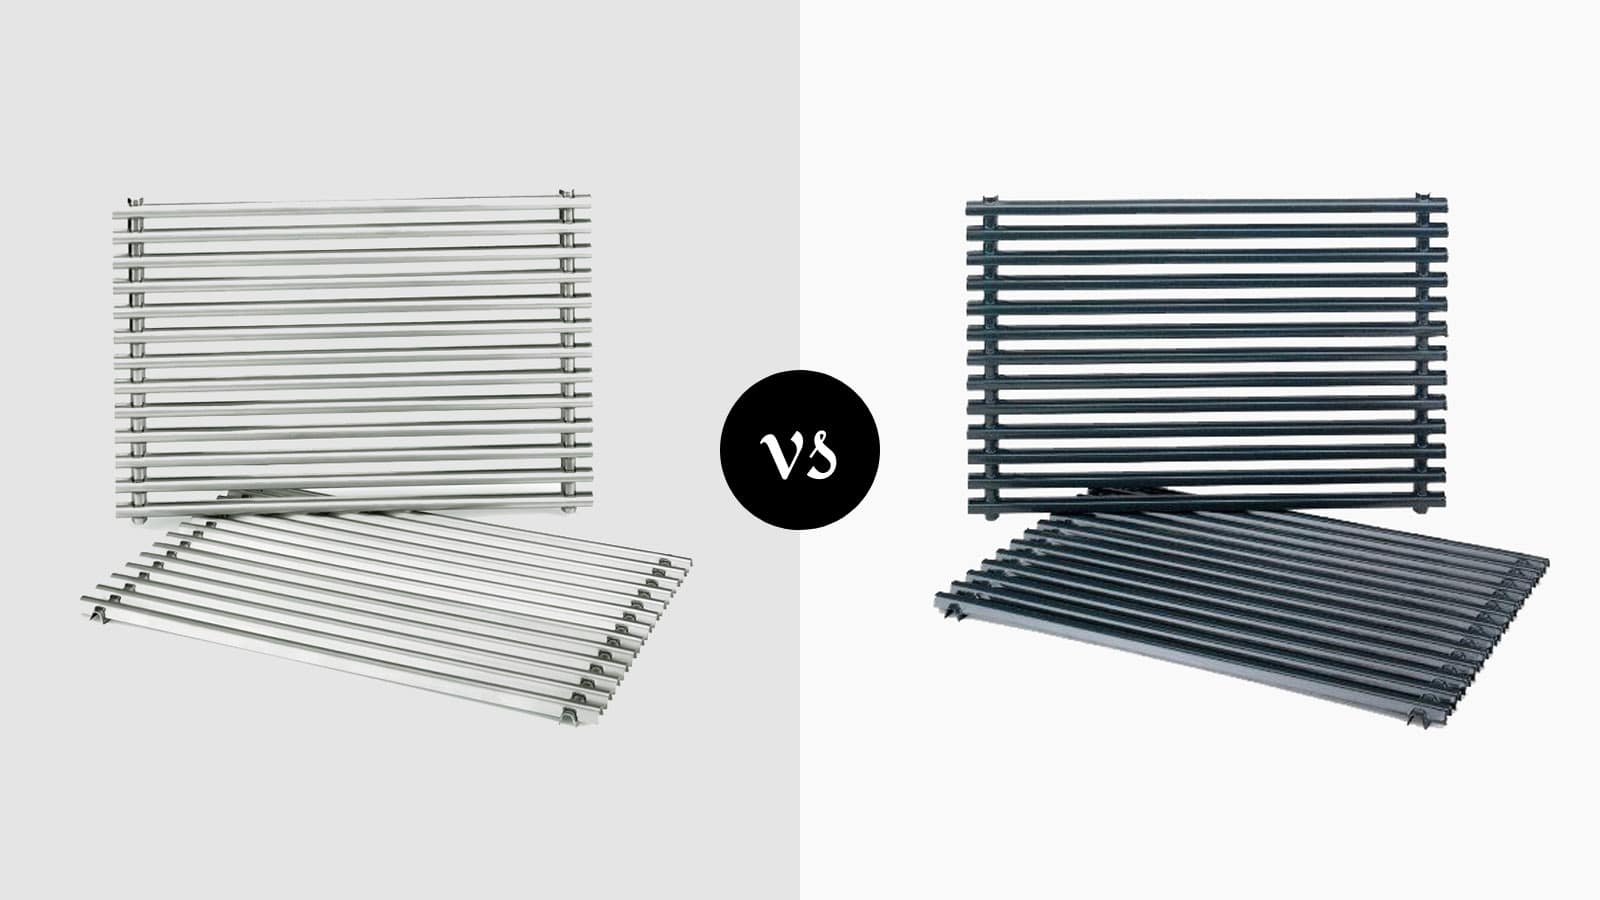 Weber Stainless Steel Grates vs Porcelain